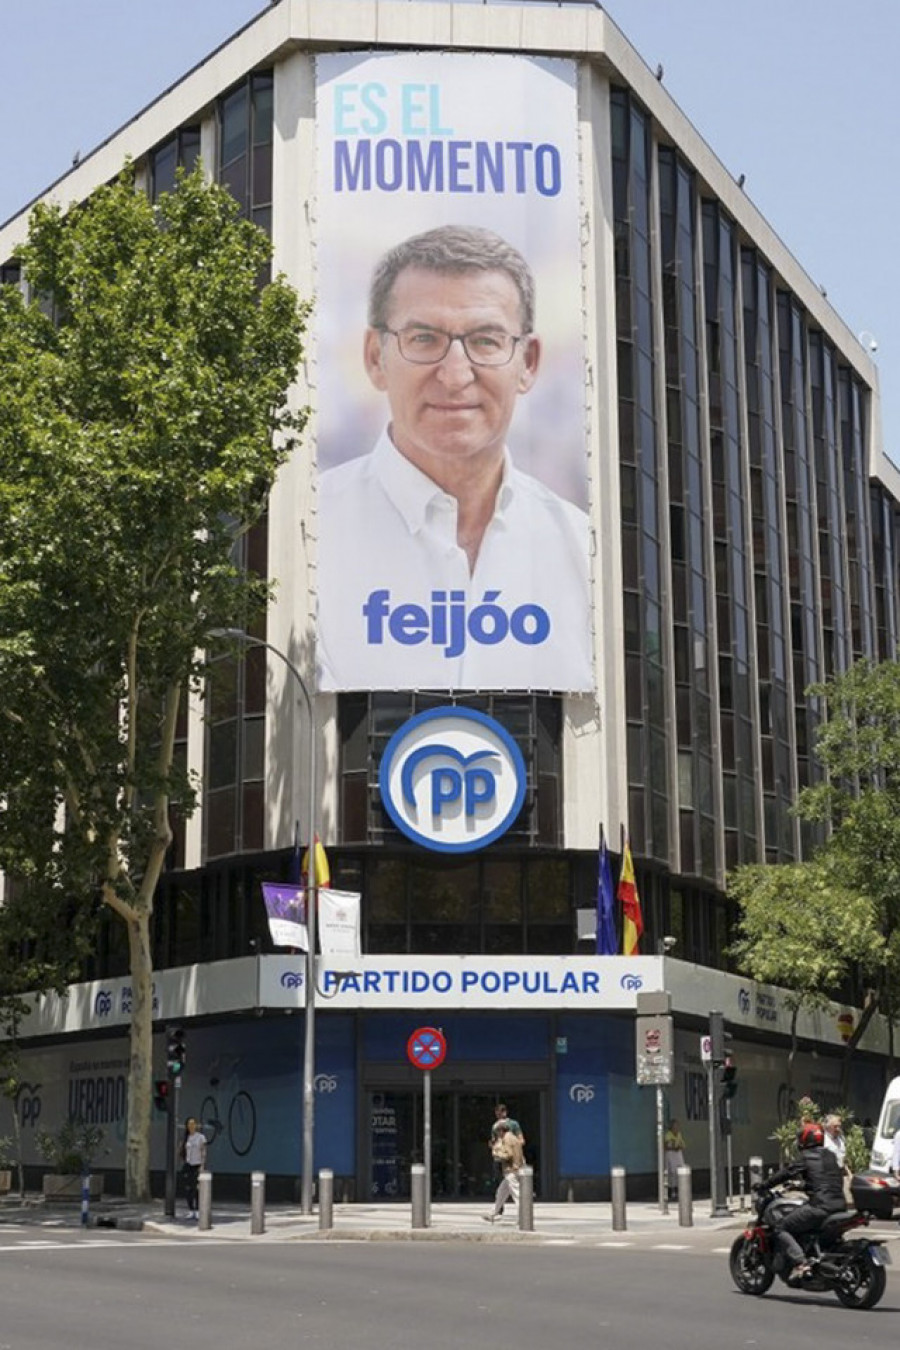 El PP cuelga de Génova una lona con Feijóo y su lema de campaña: "Es el momento"